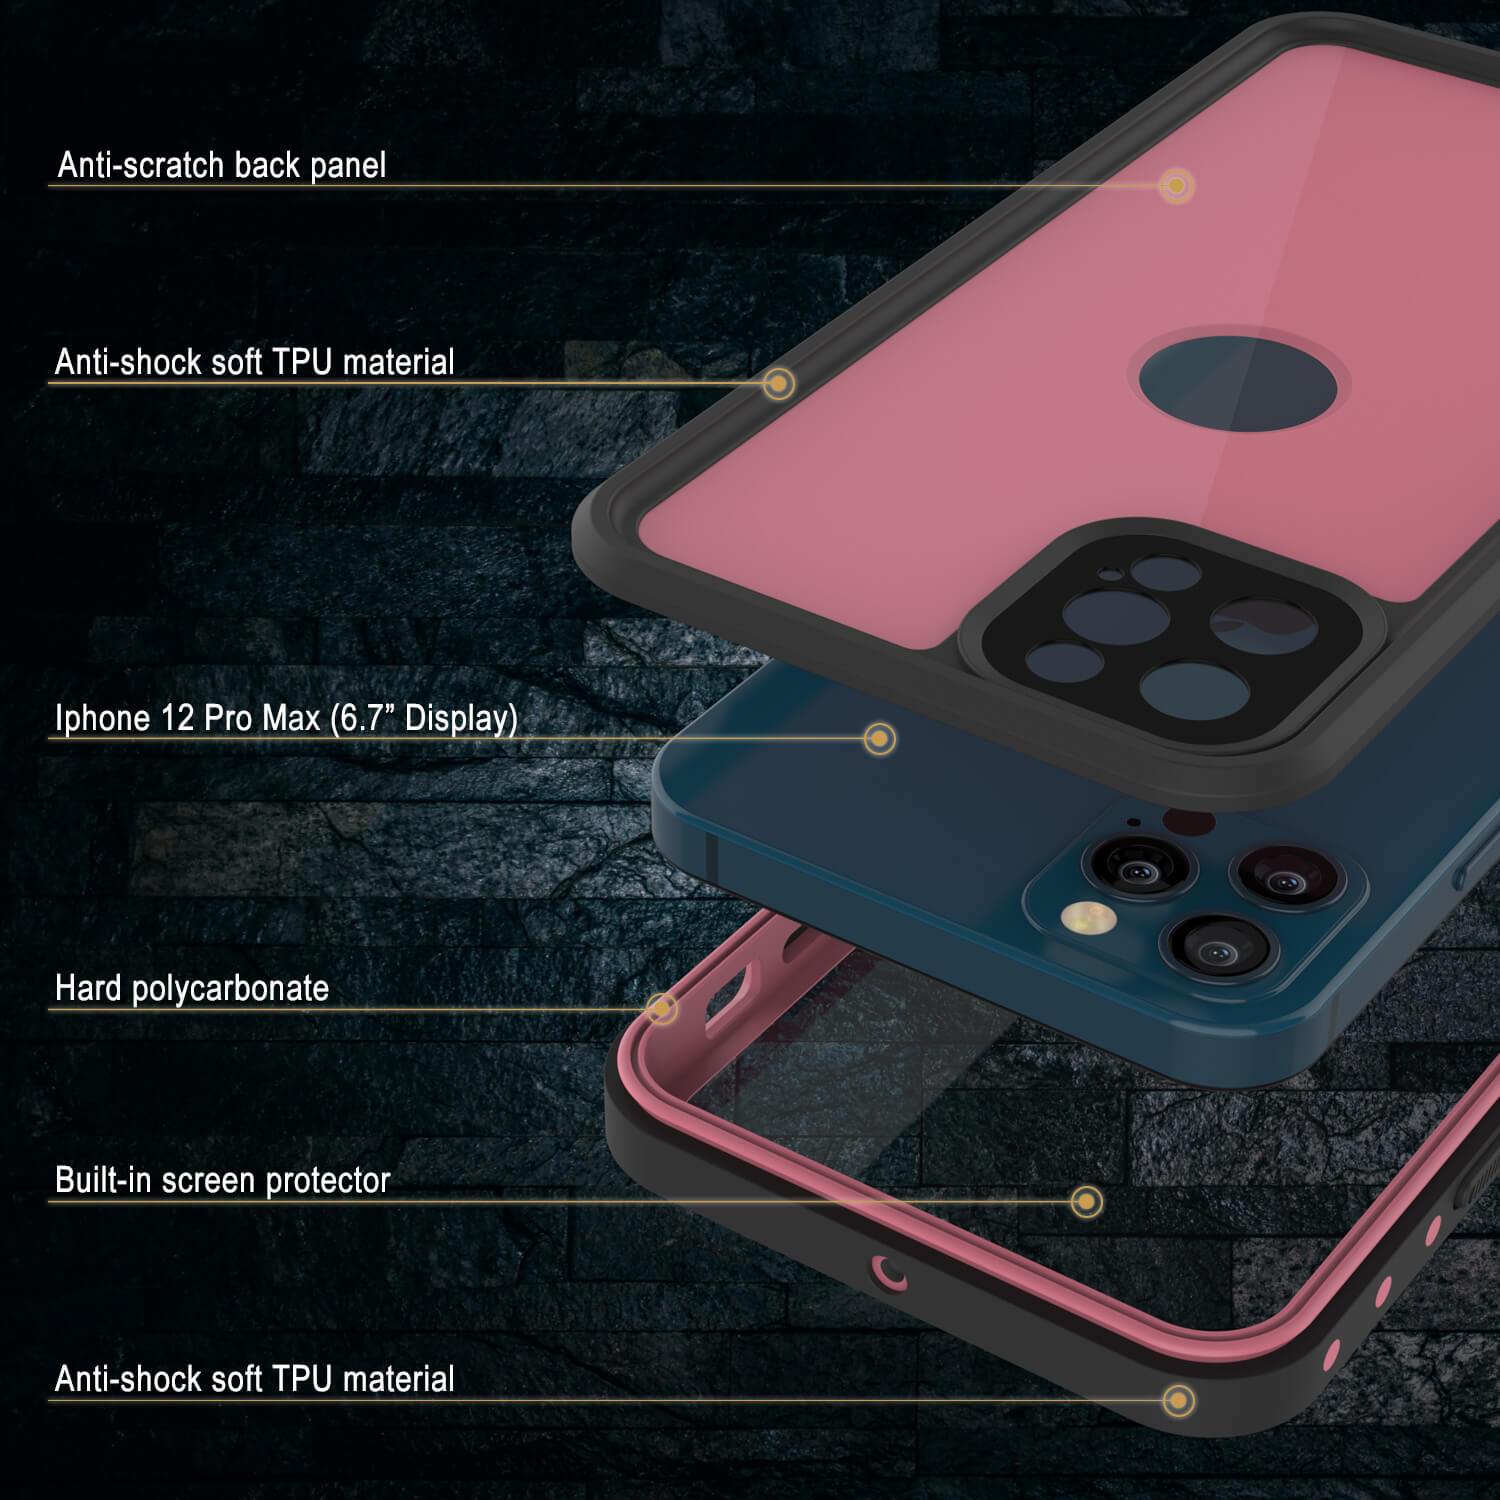 iPhone 12 Pro Max Waterproof IP68 Case, Punkcase [Pink] [StudStar Series] [Slim Fit] [Dirtproof]